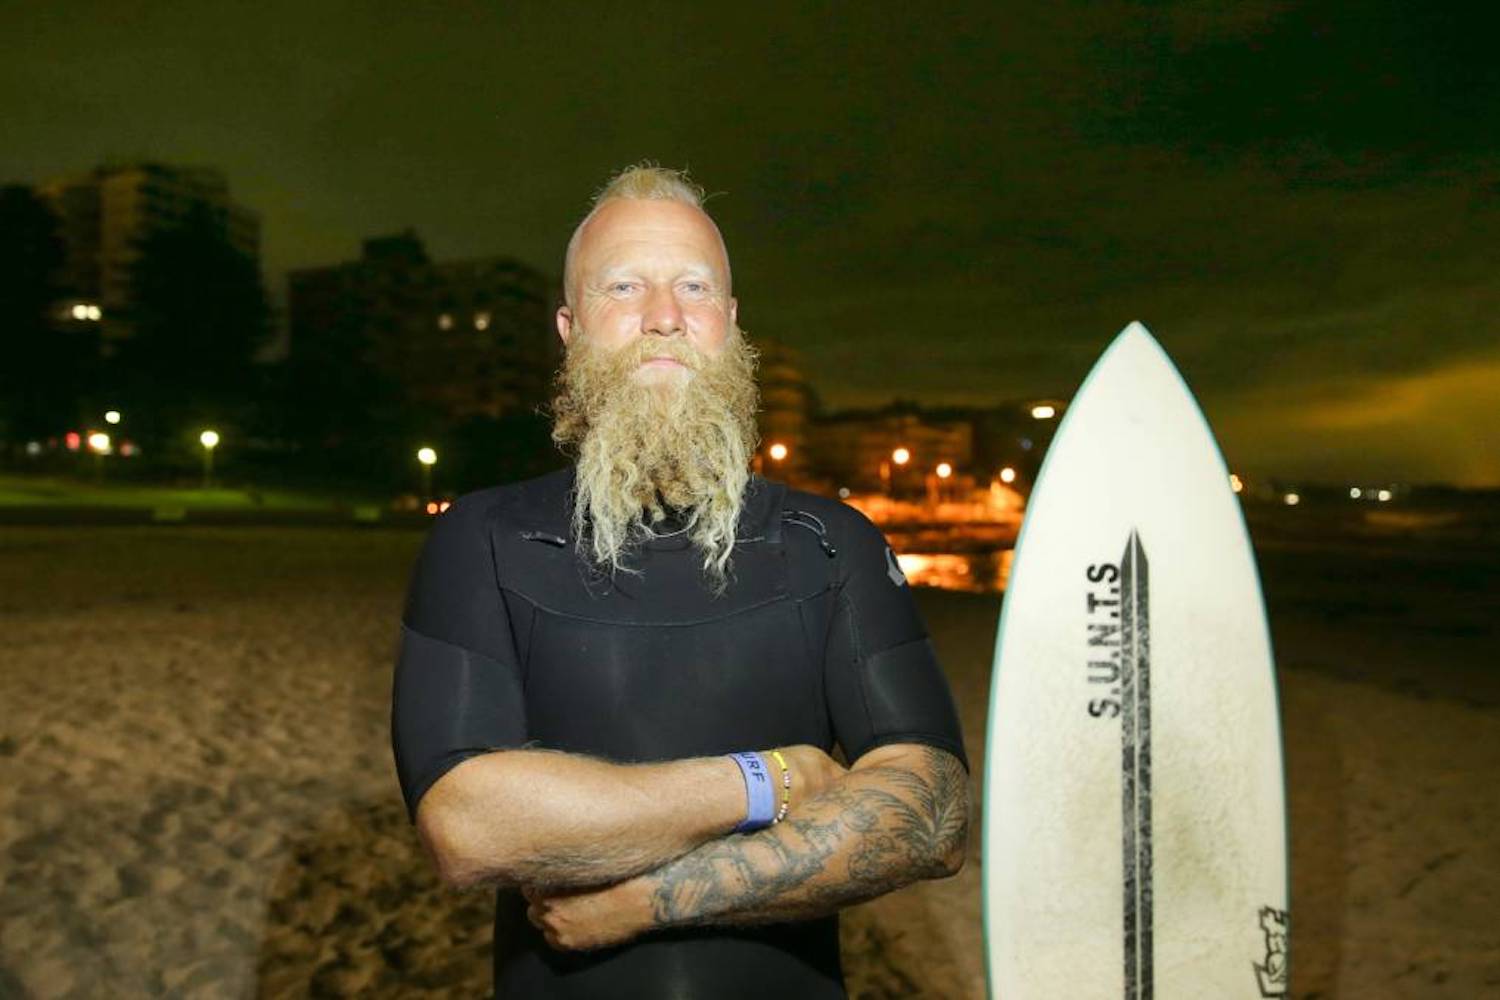 Blake Johnston, leyenda australiana certificada, intenta la sesión de surf más larga del mundo para concienciar sobre la salud mental